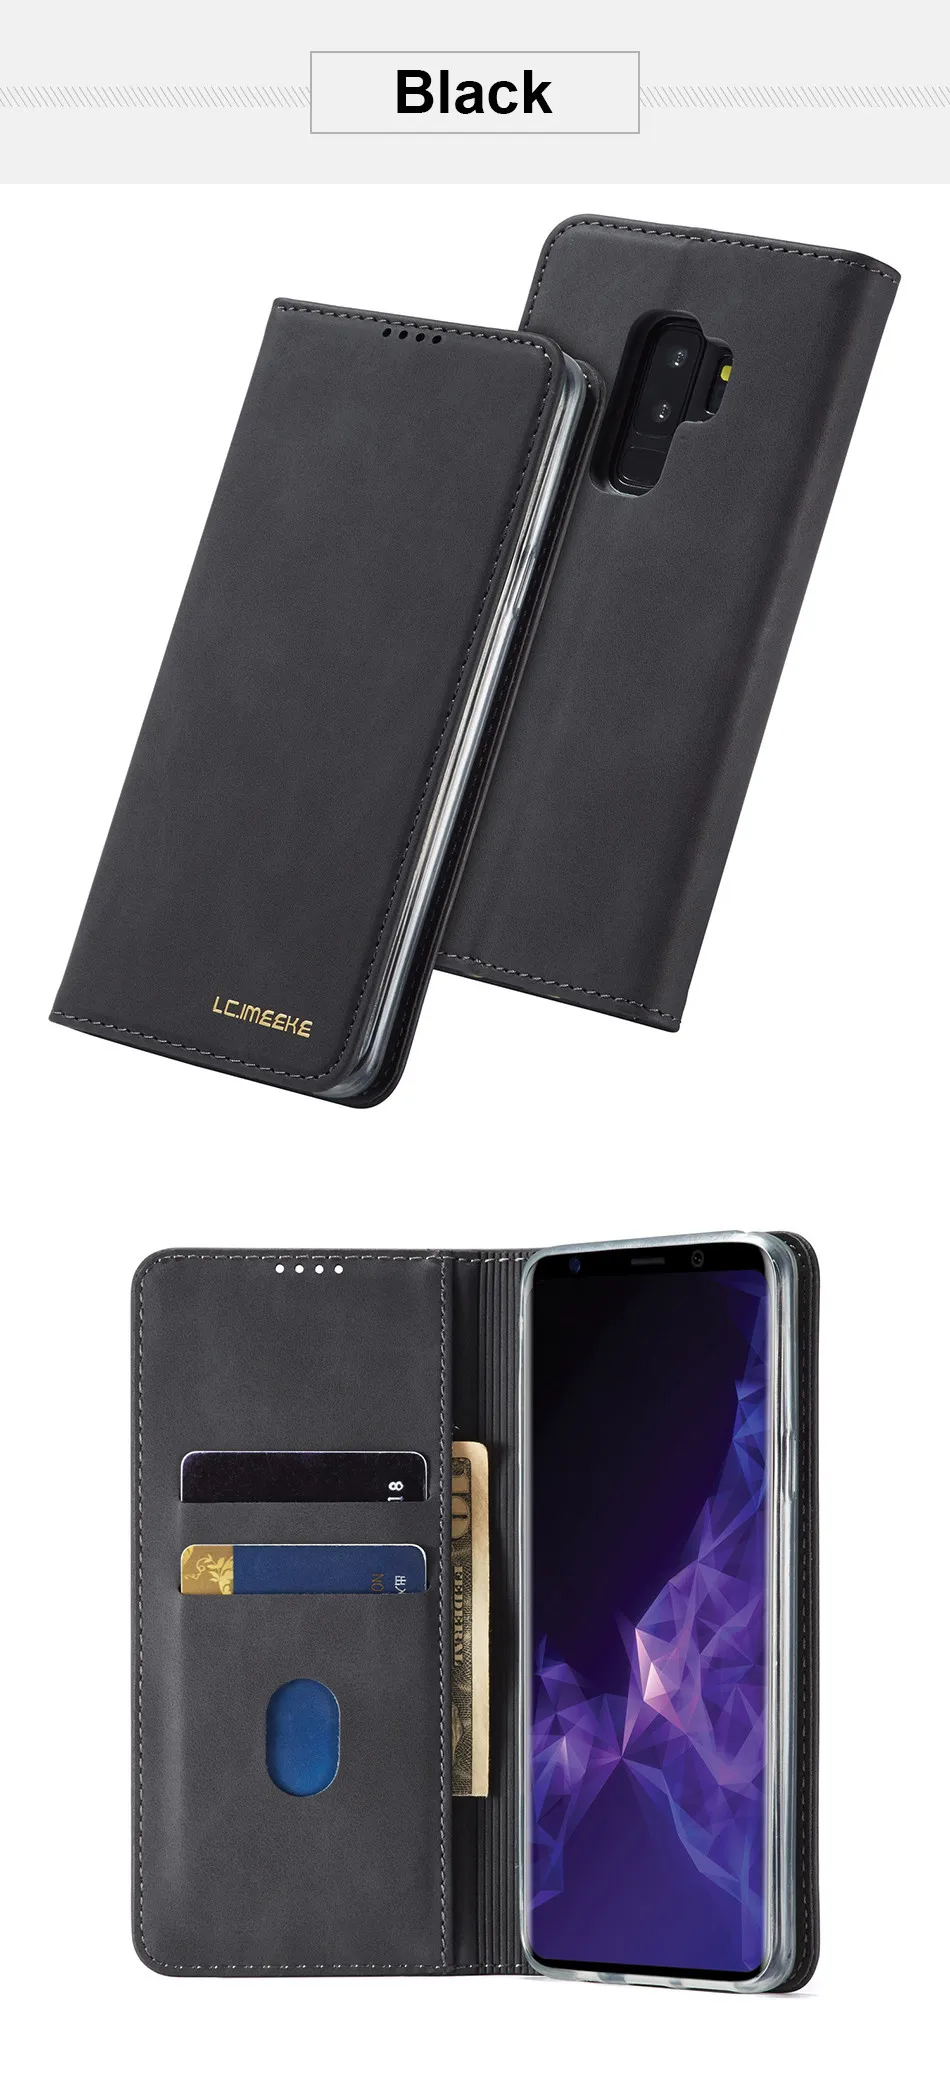 S9 Plus чехол для samsung S9 Plus чехол флип-чехол для телефона Магнитный на samsung Galaxy S9 Чехол кожаный винтажный кошелек Чехол S9+ чехол